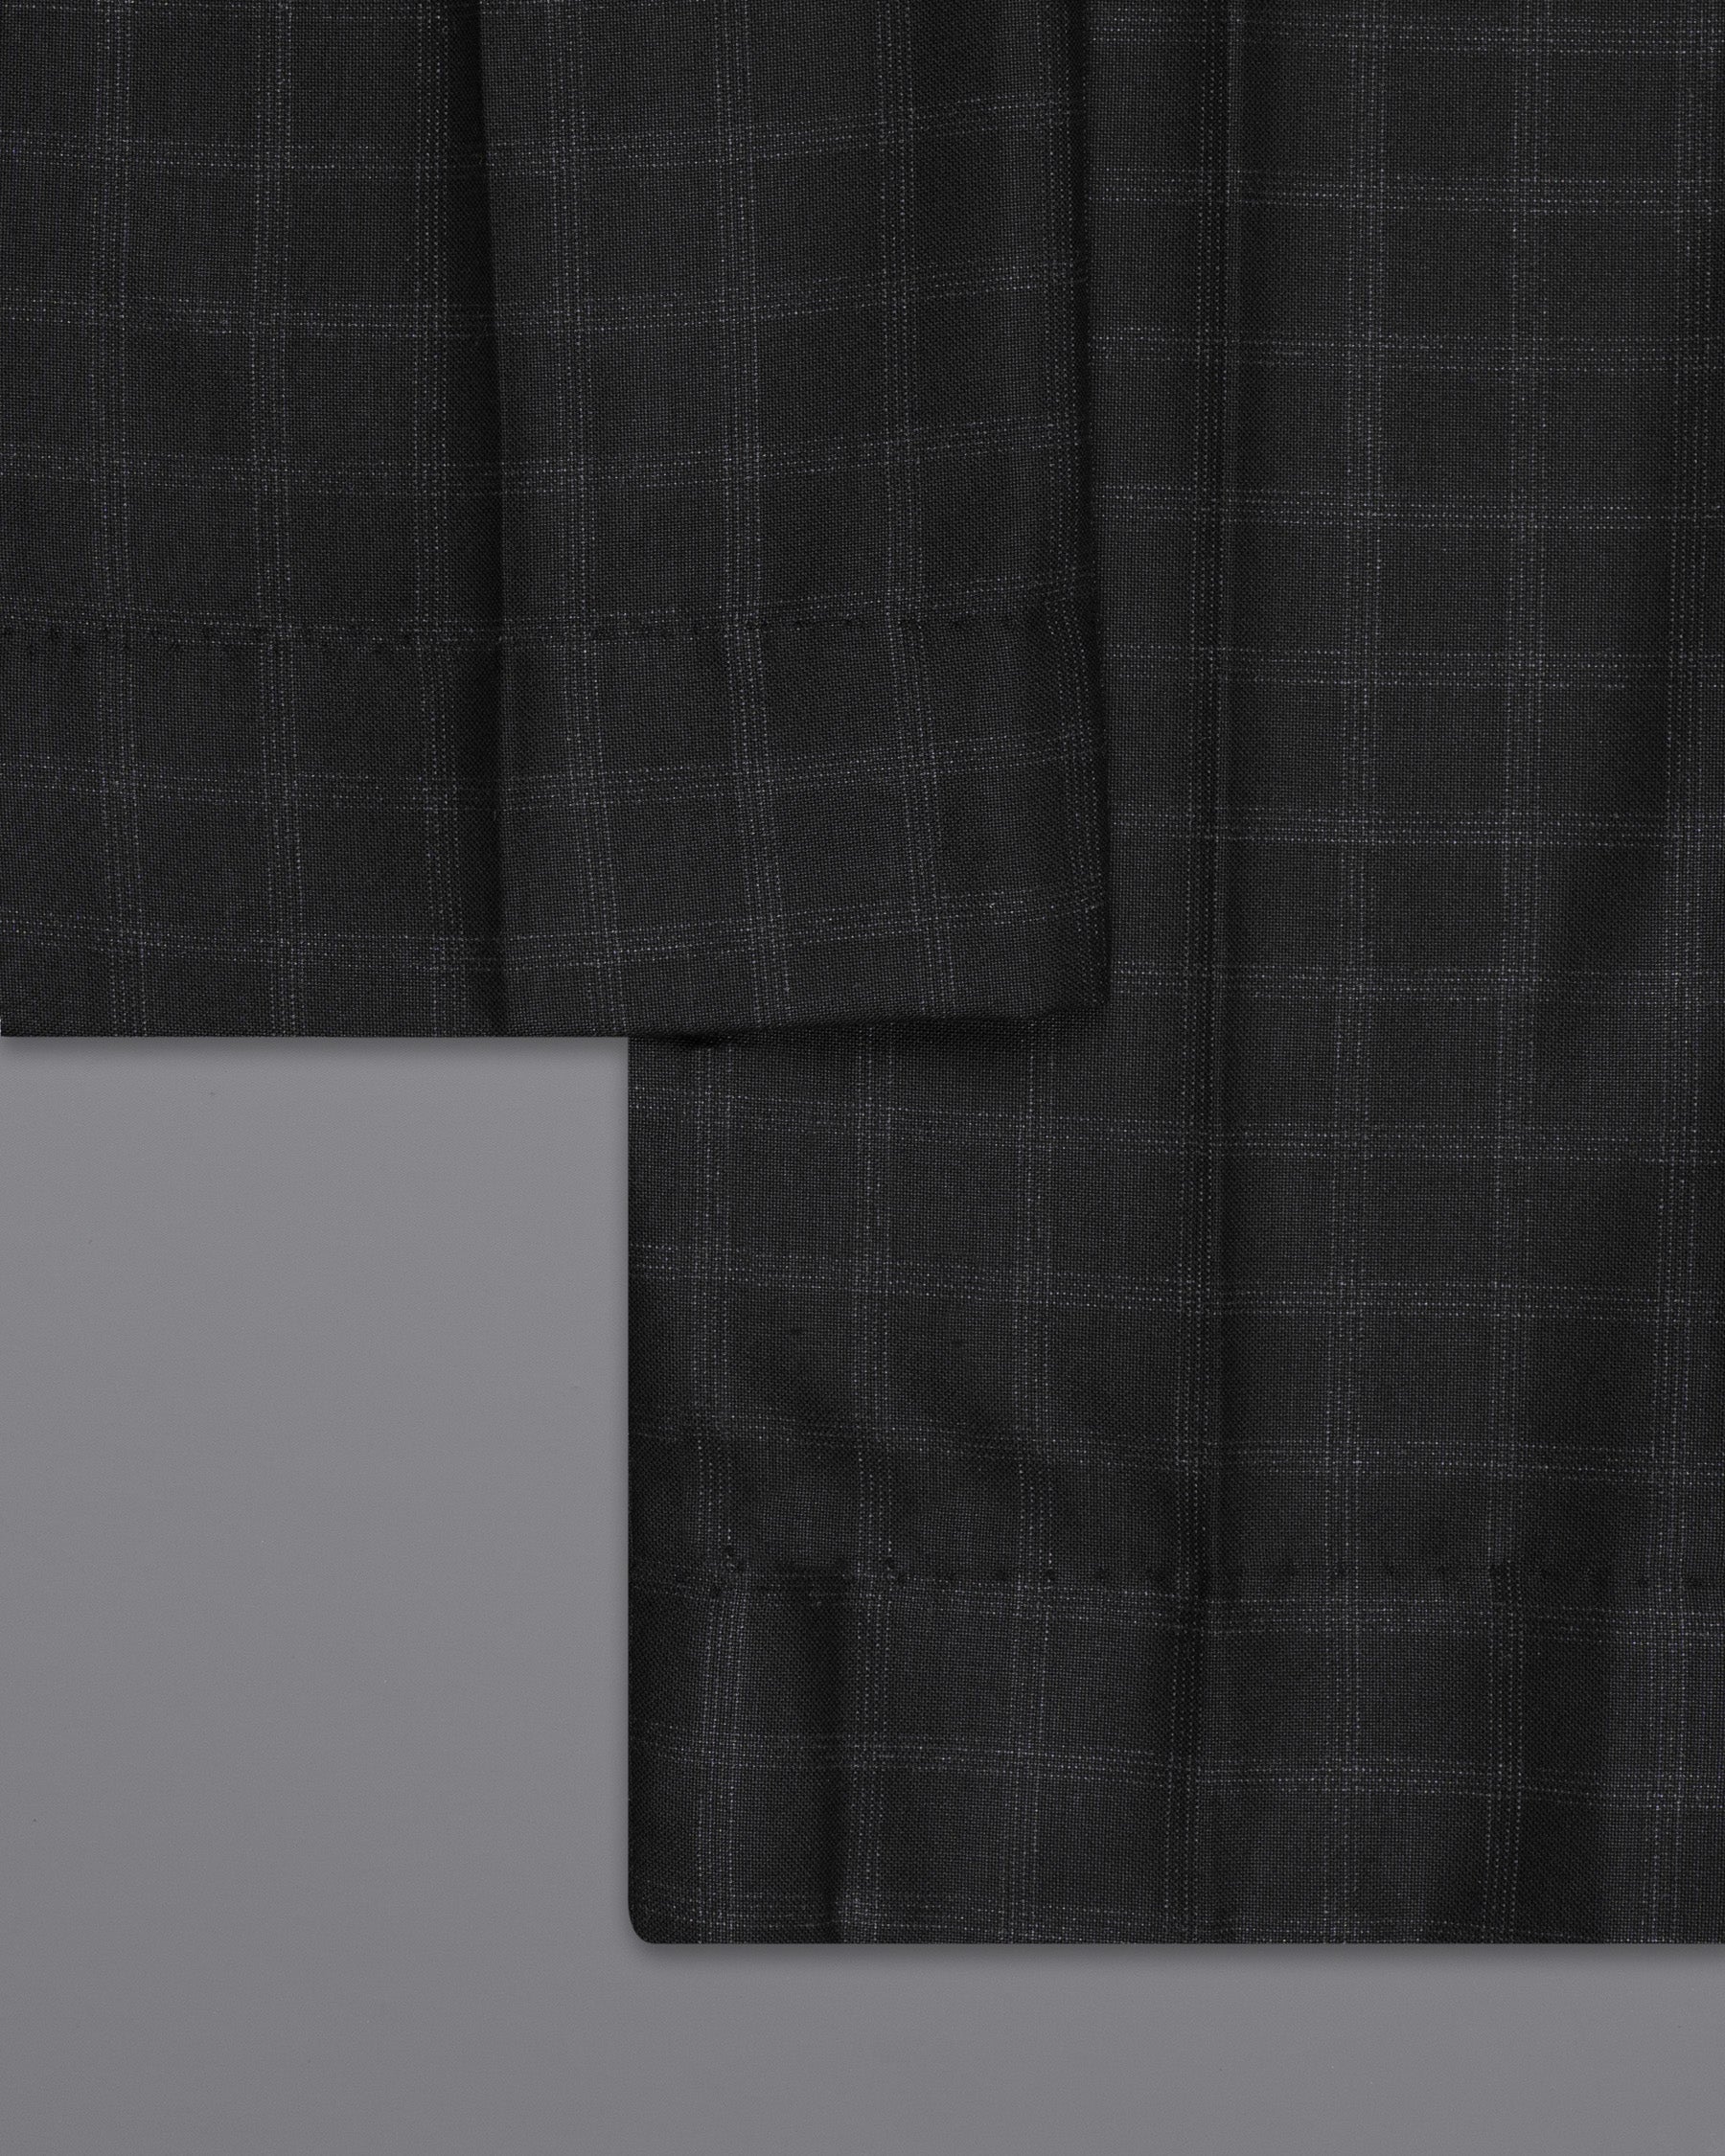 Bunker Black Windowpane Wool Rich Sports Suit